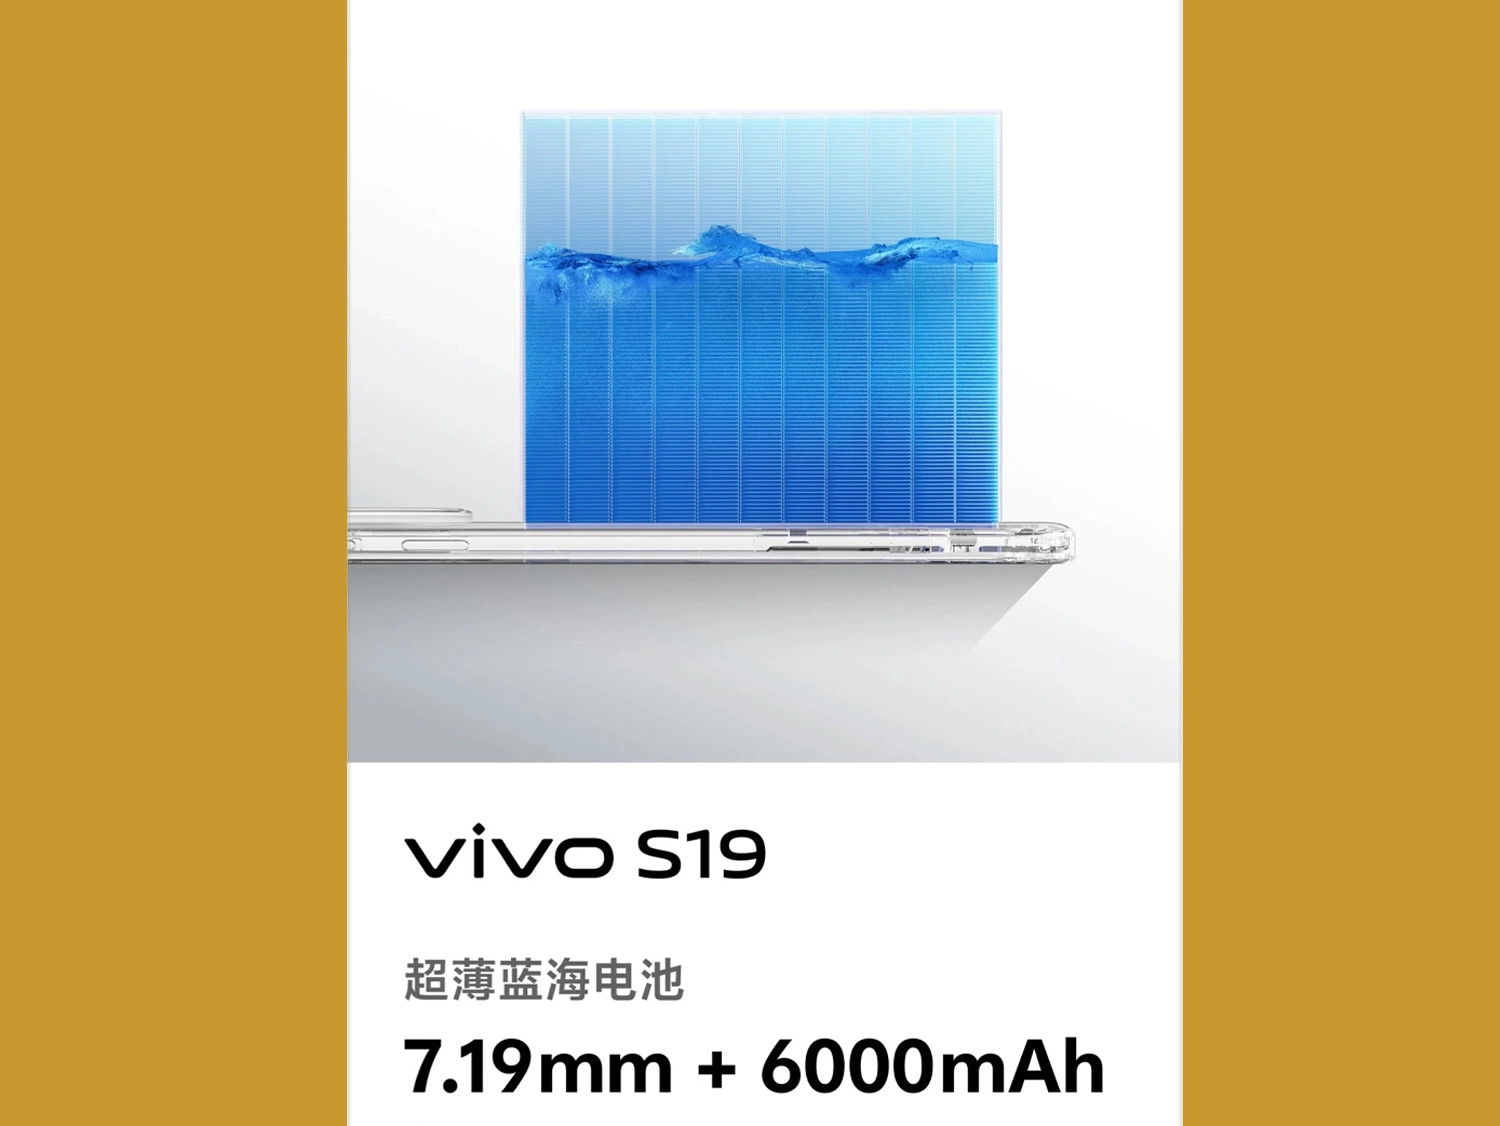 Vivo S19 được trang bị viên pin có dung lượng lên đến 6000 mAh